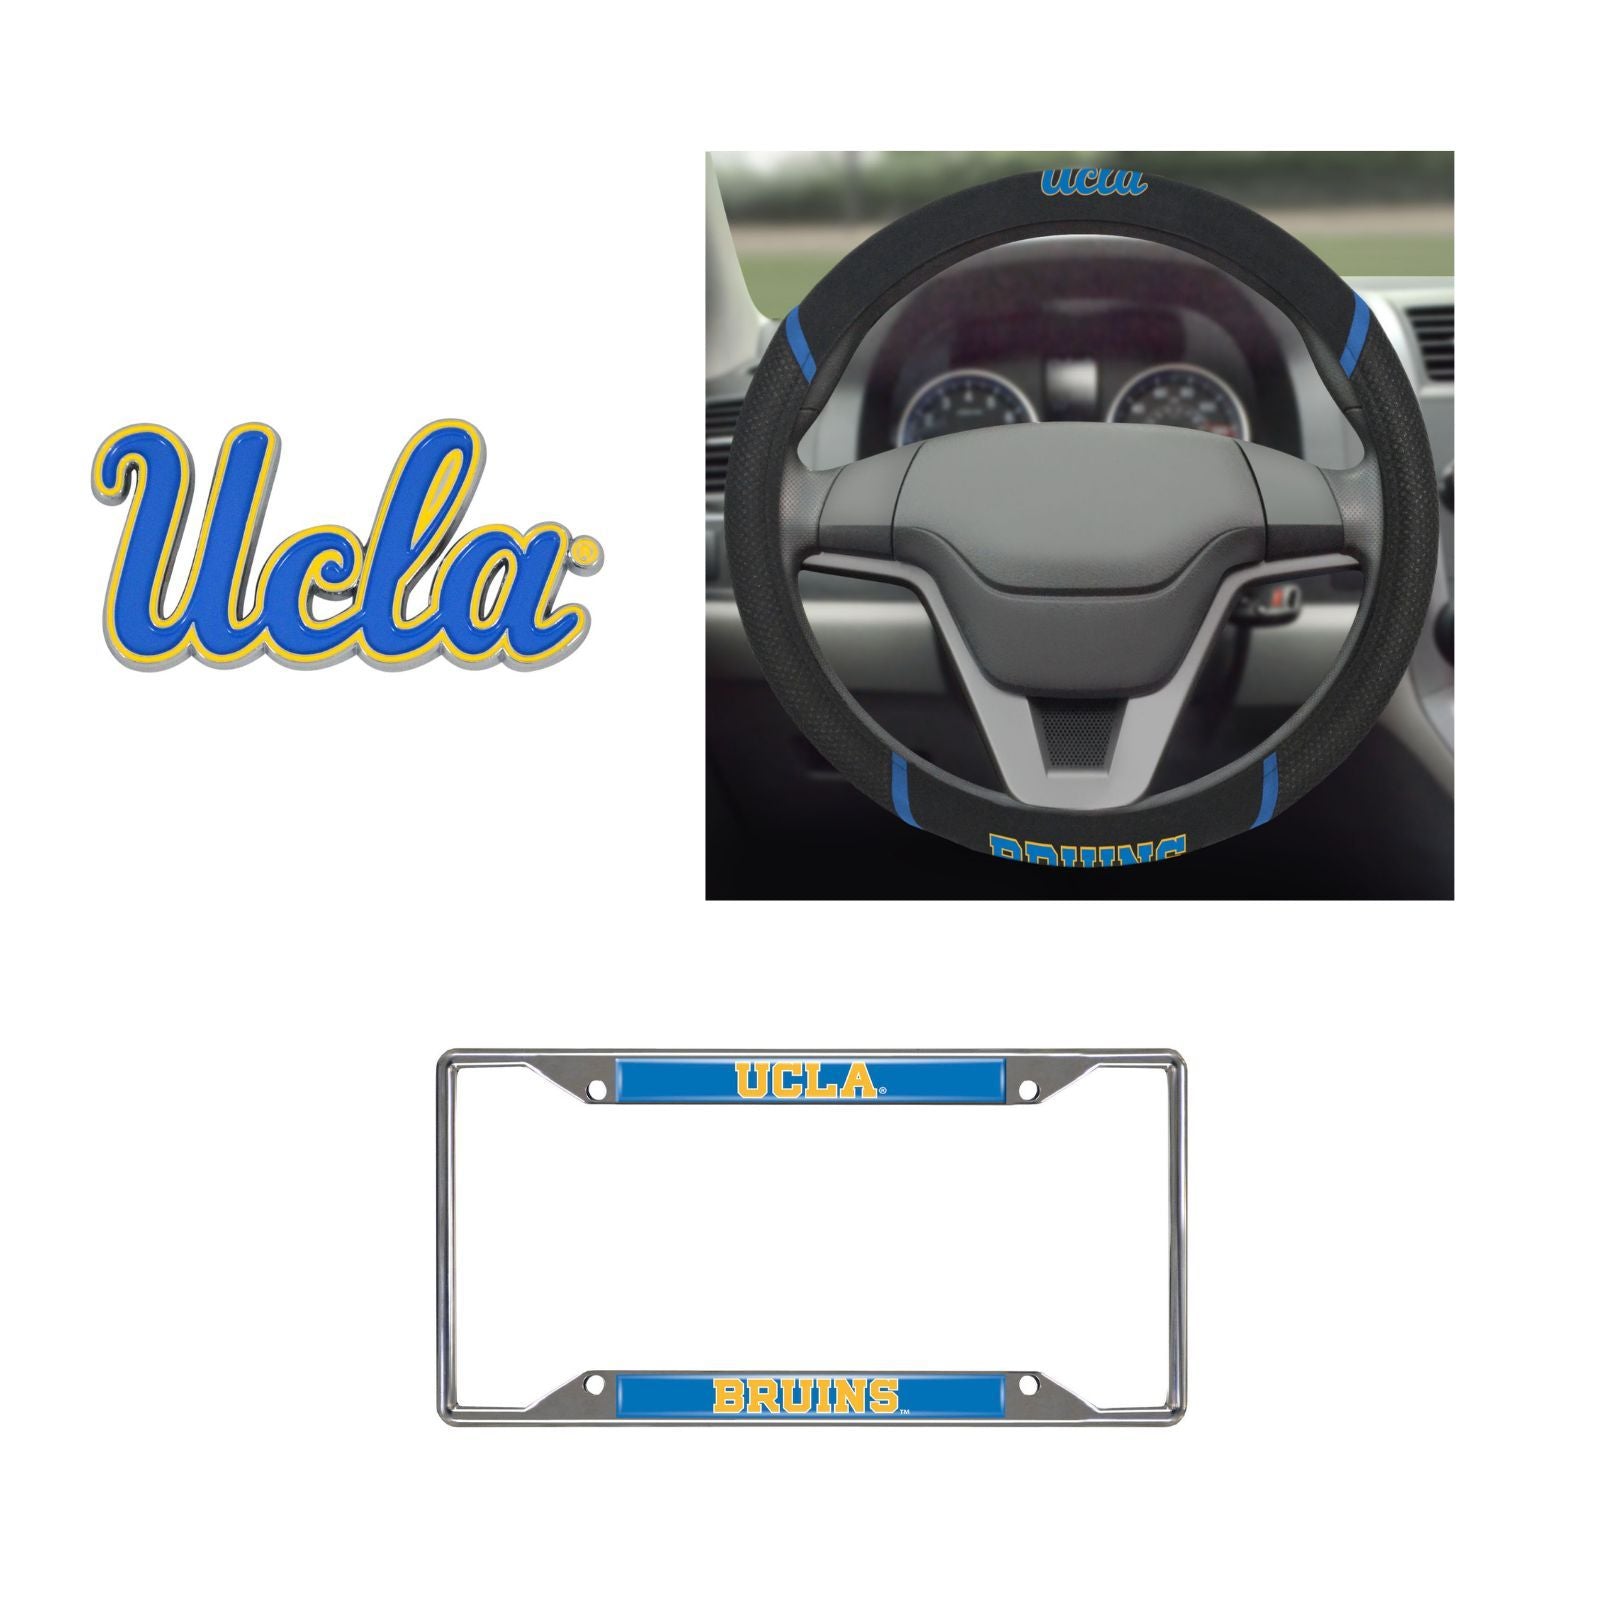 UCLA Bruins Steering Wheel Cover, License Plate Frame, 3D Color Emblem